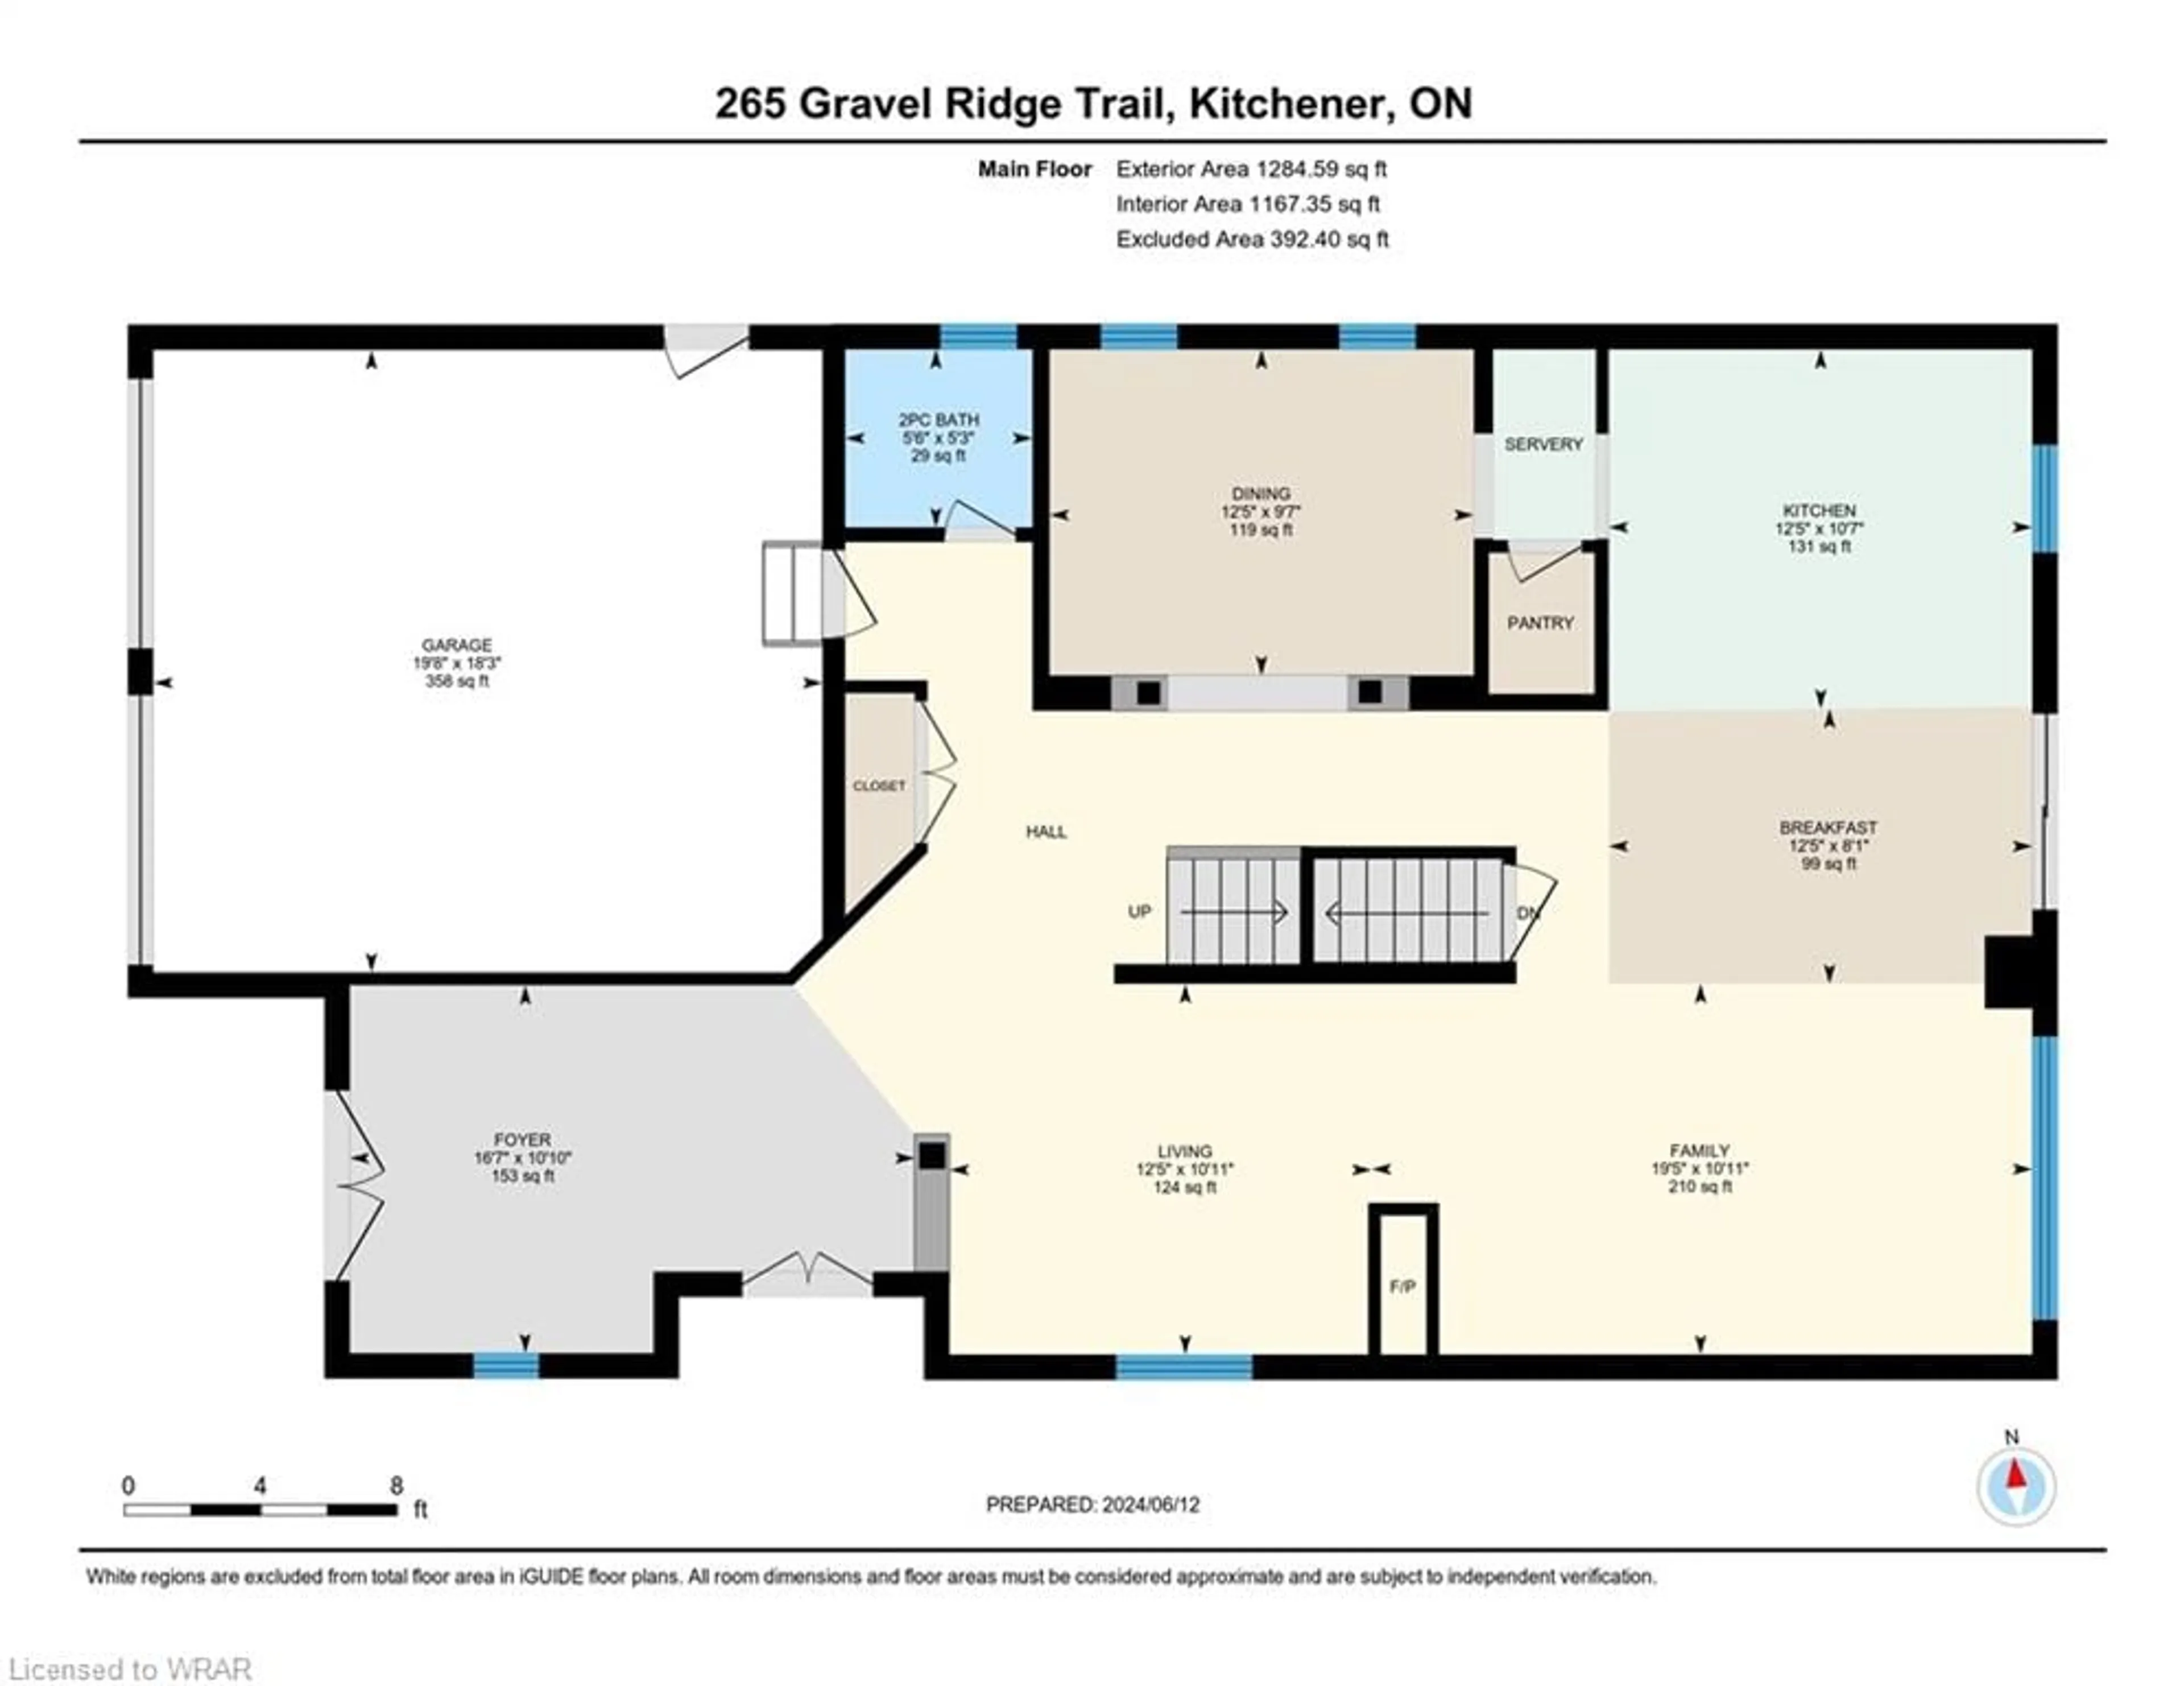 Floor plan for 265 Gravel Ridge Trail, Kitchener Ontario N2E 0C5